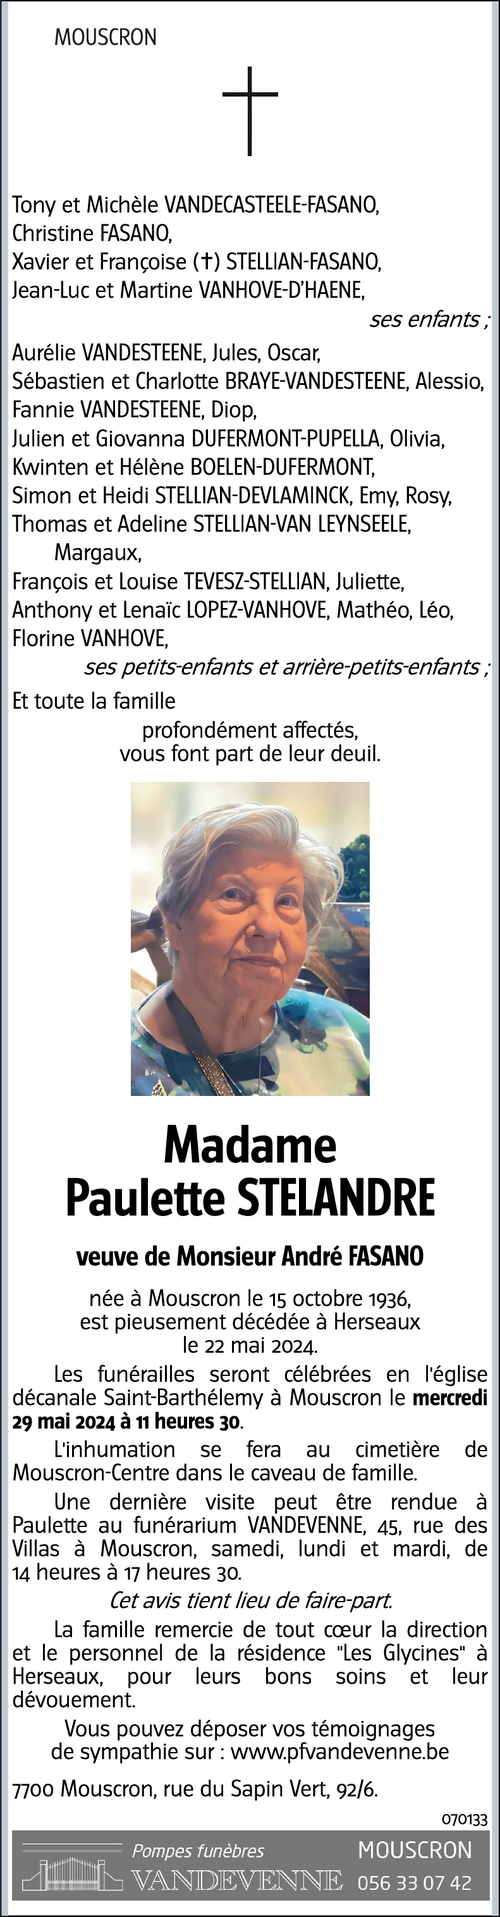 Paulette STELANDRE